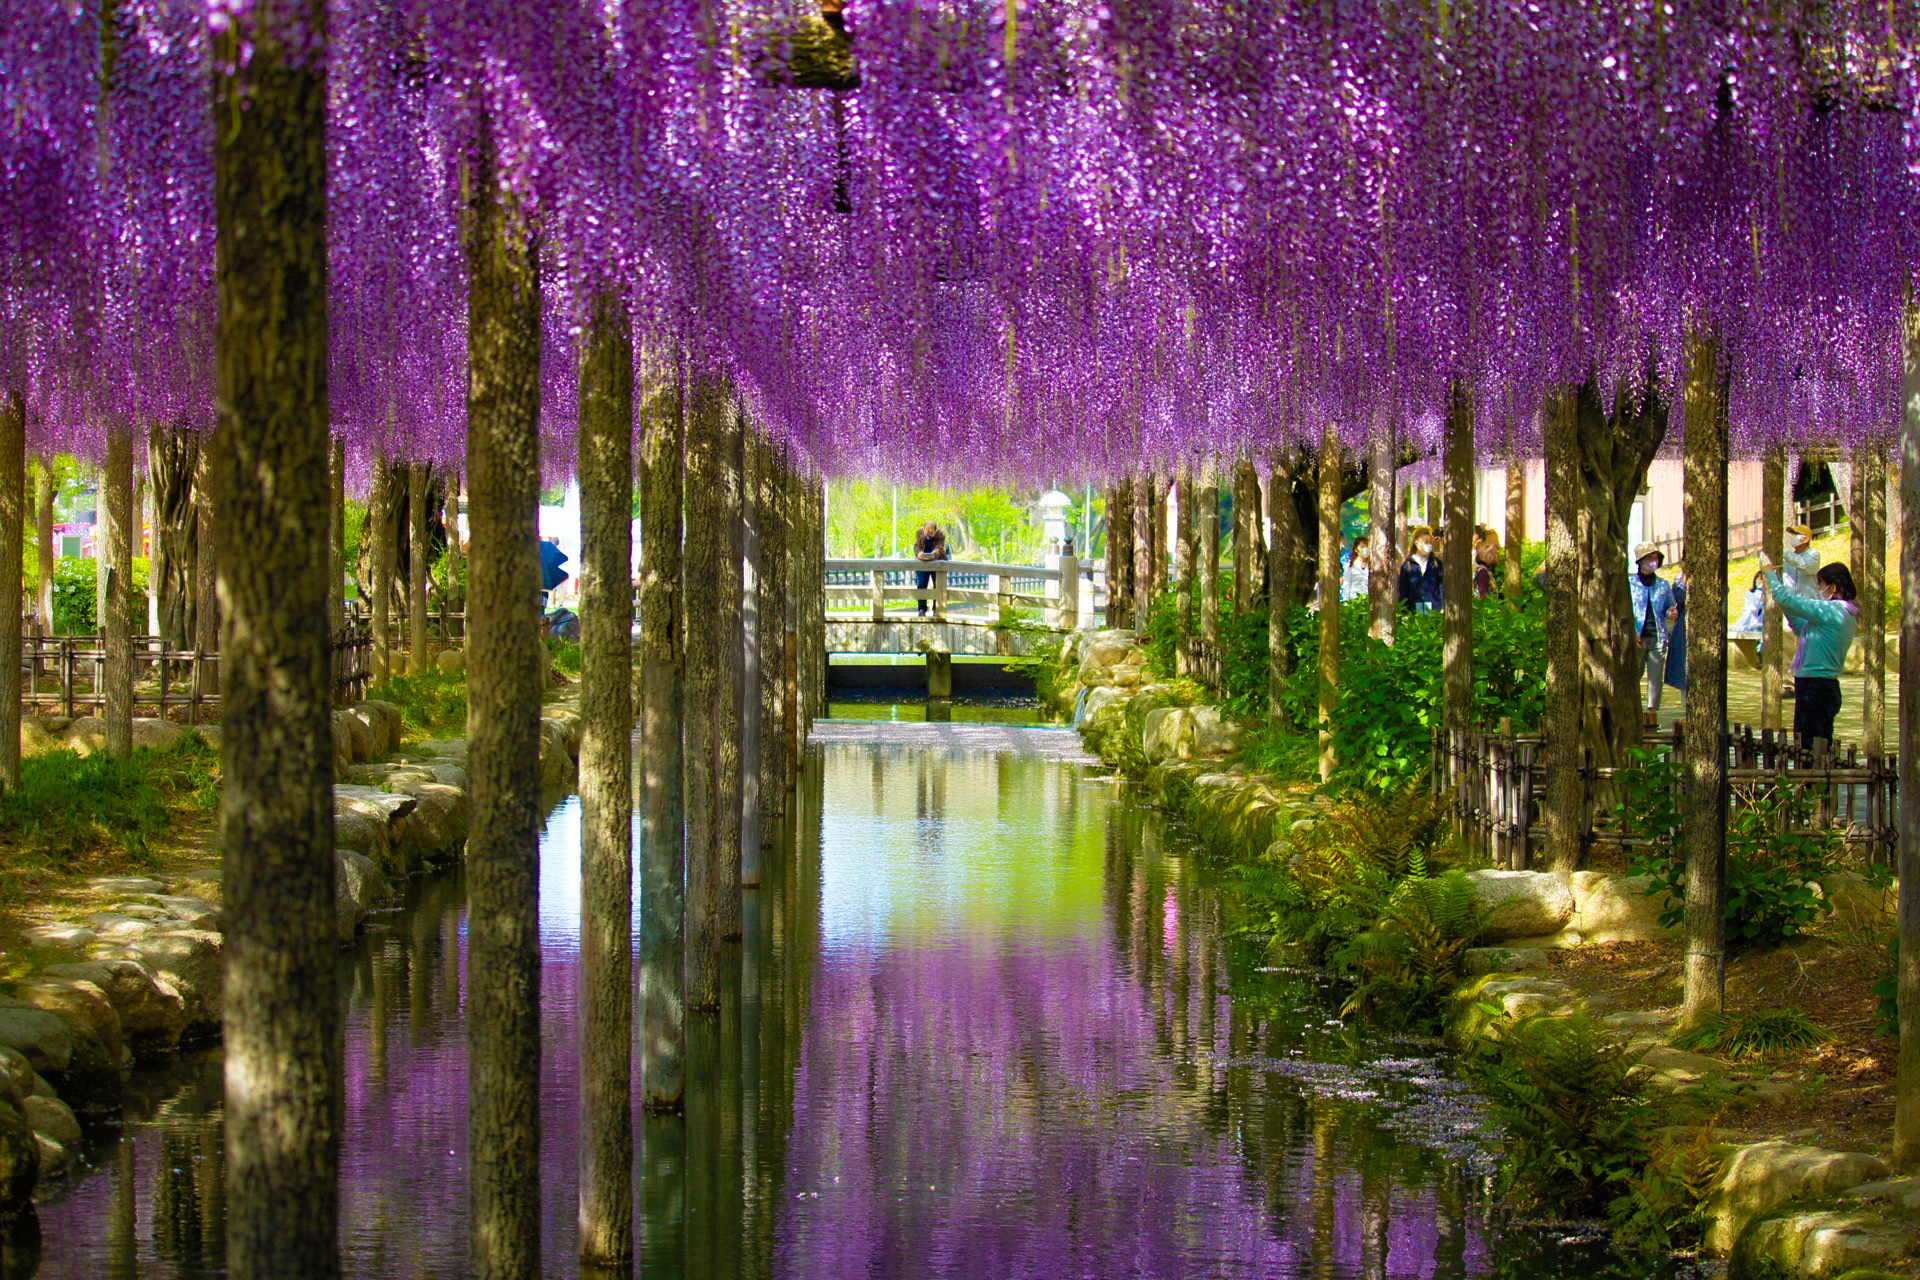 天王川公園 愛知県津島市 上下に映る鮮やかな紫 愛知藤の花スポット